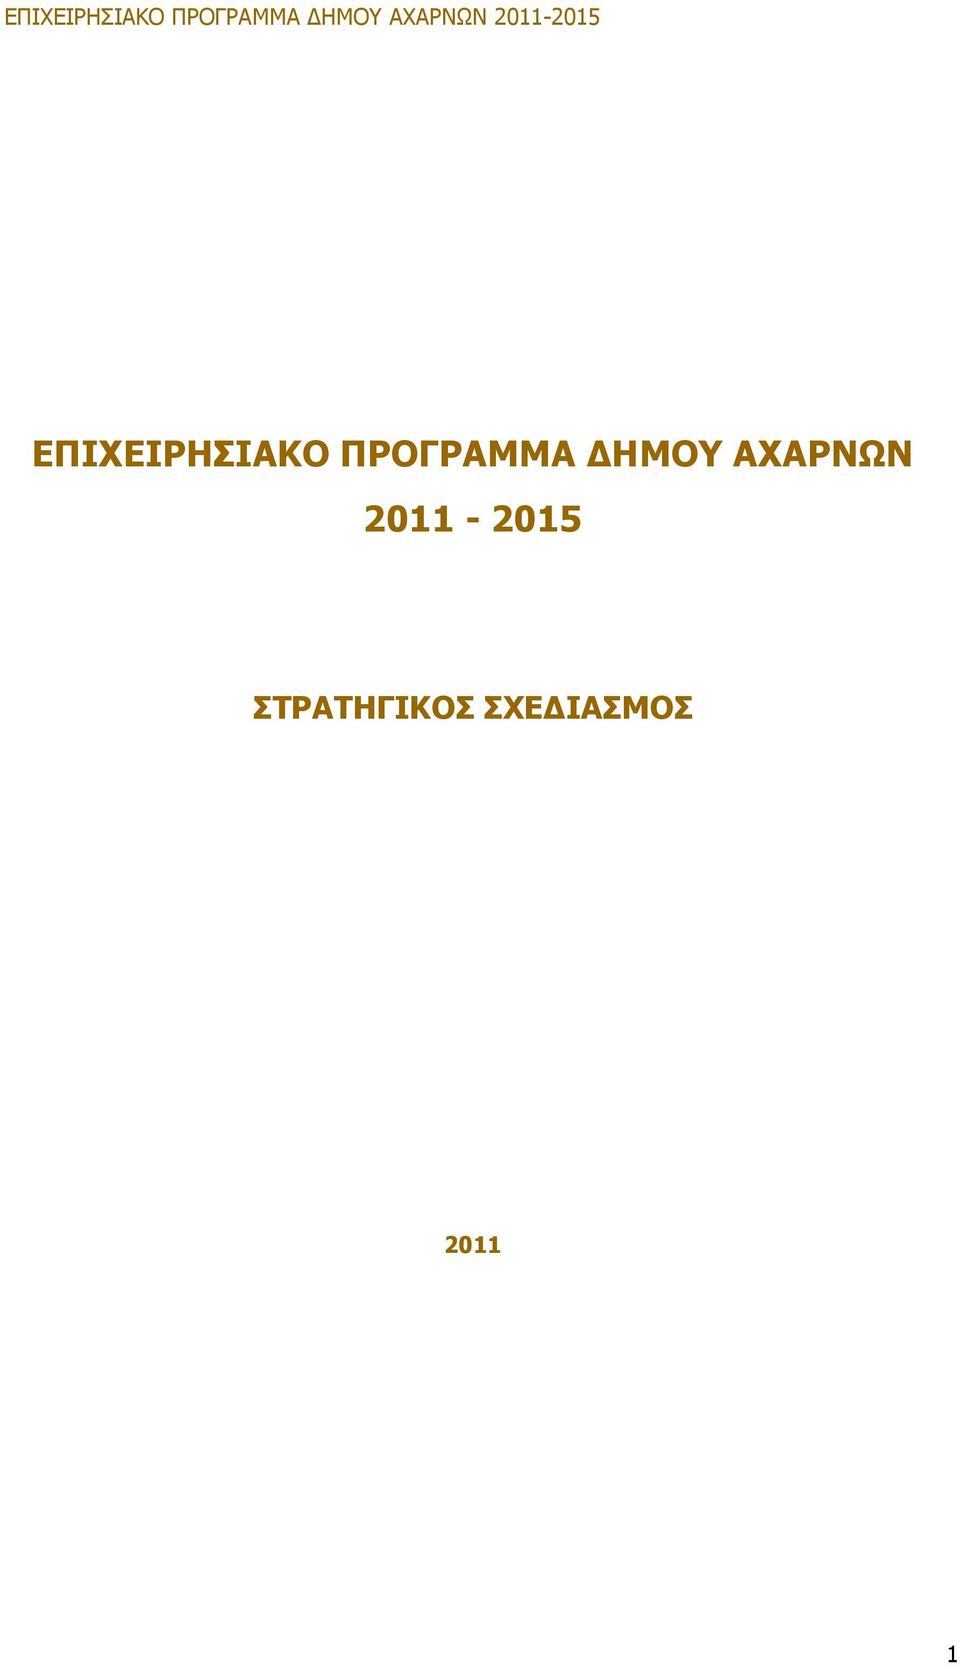 ΑΧΑΡΝΩΝ 2011-2015